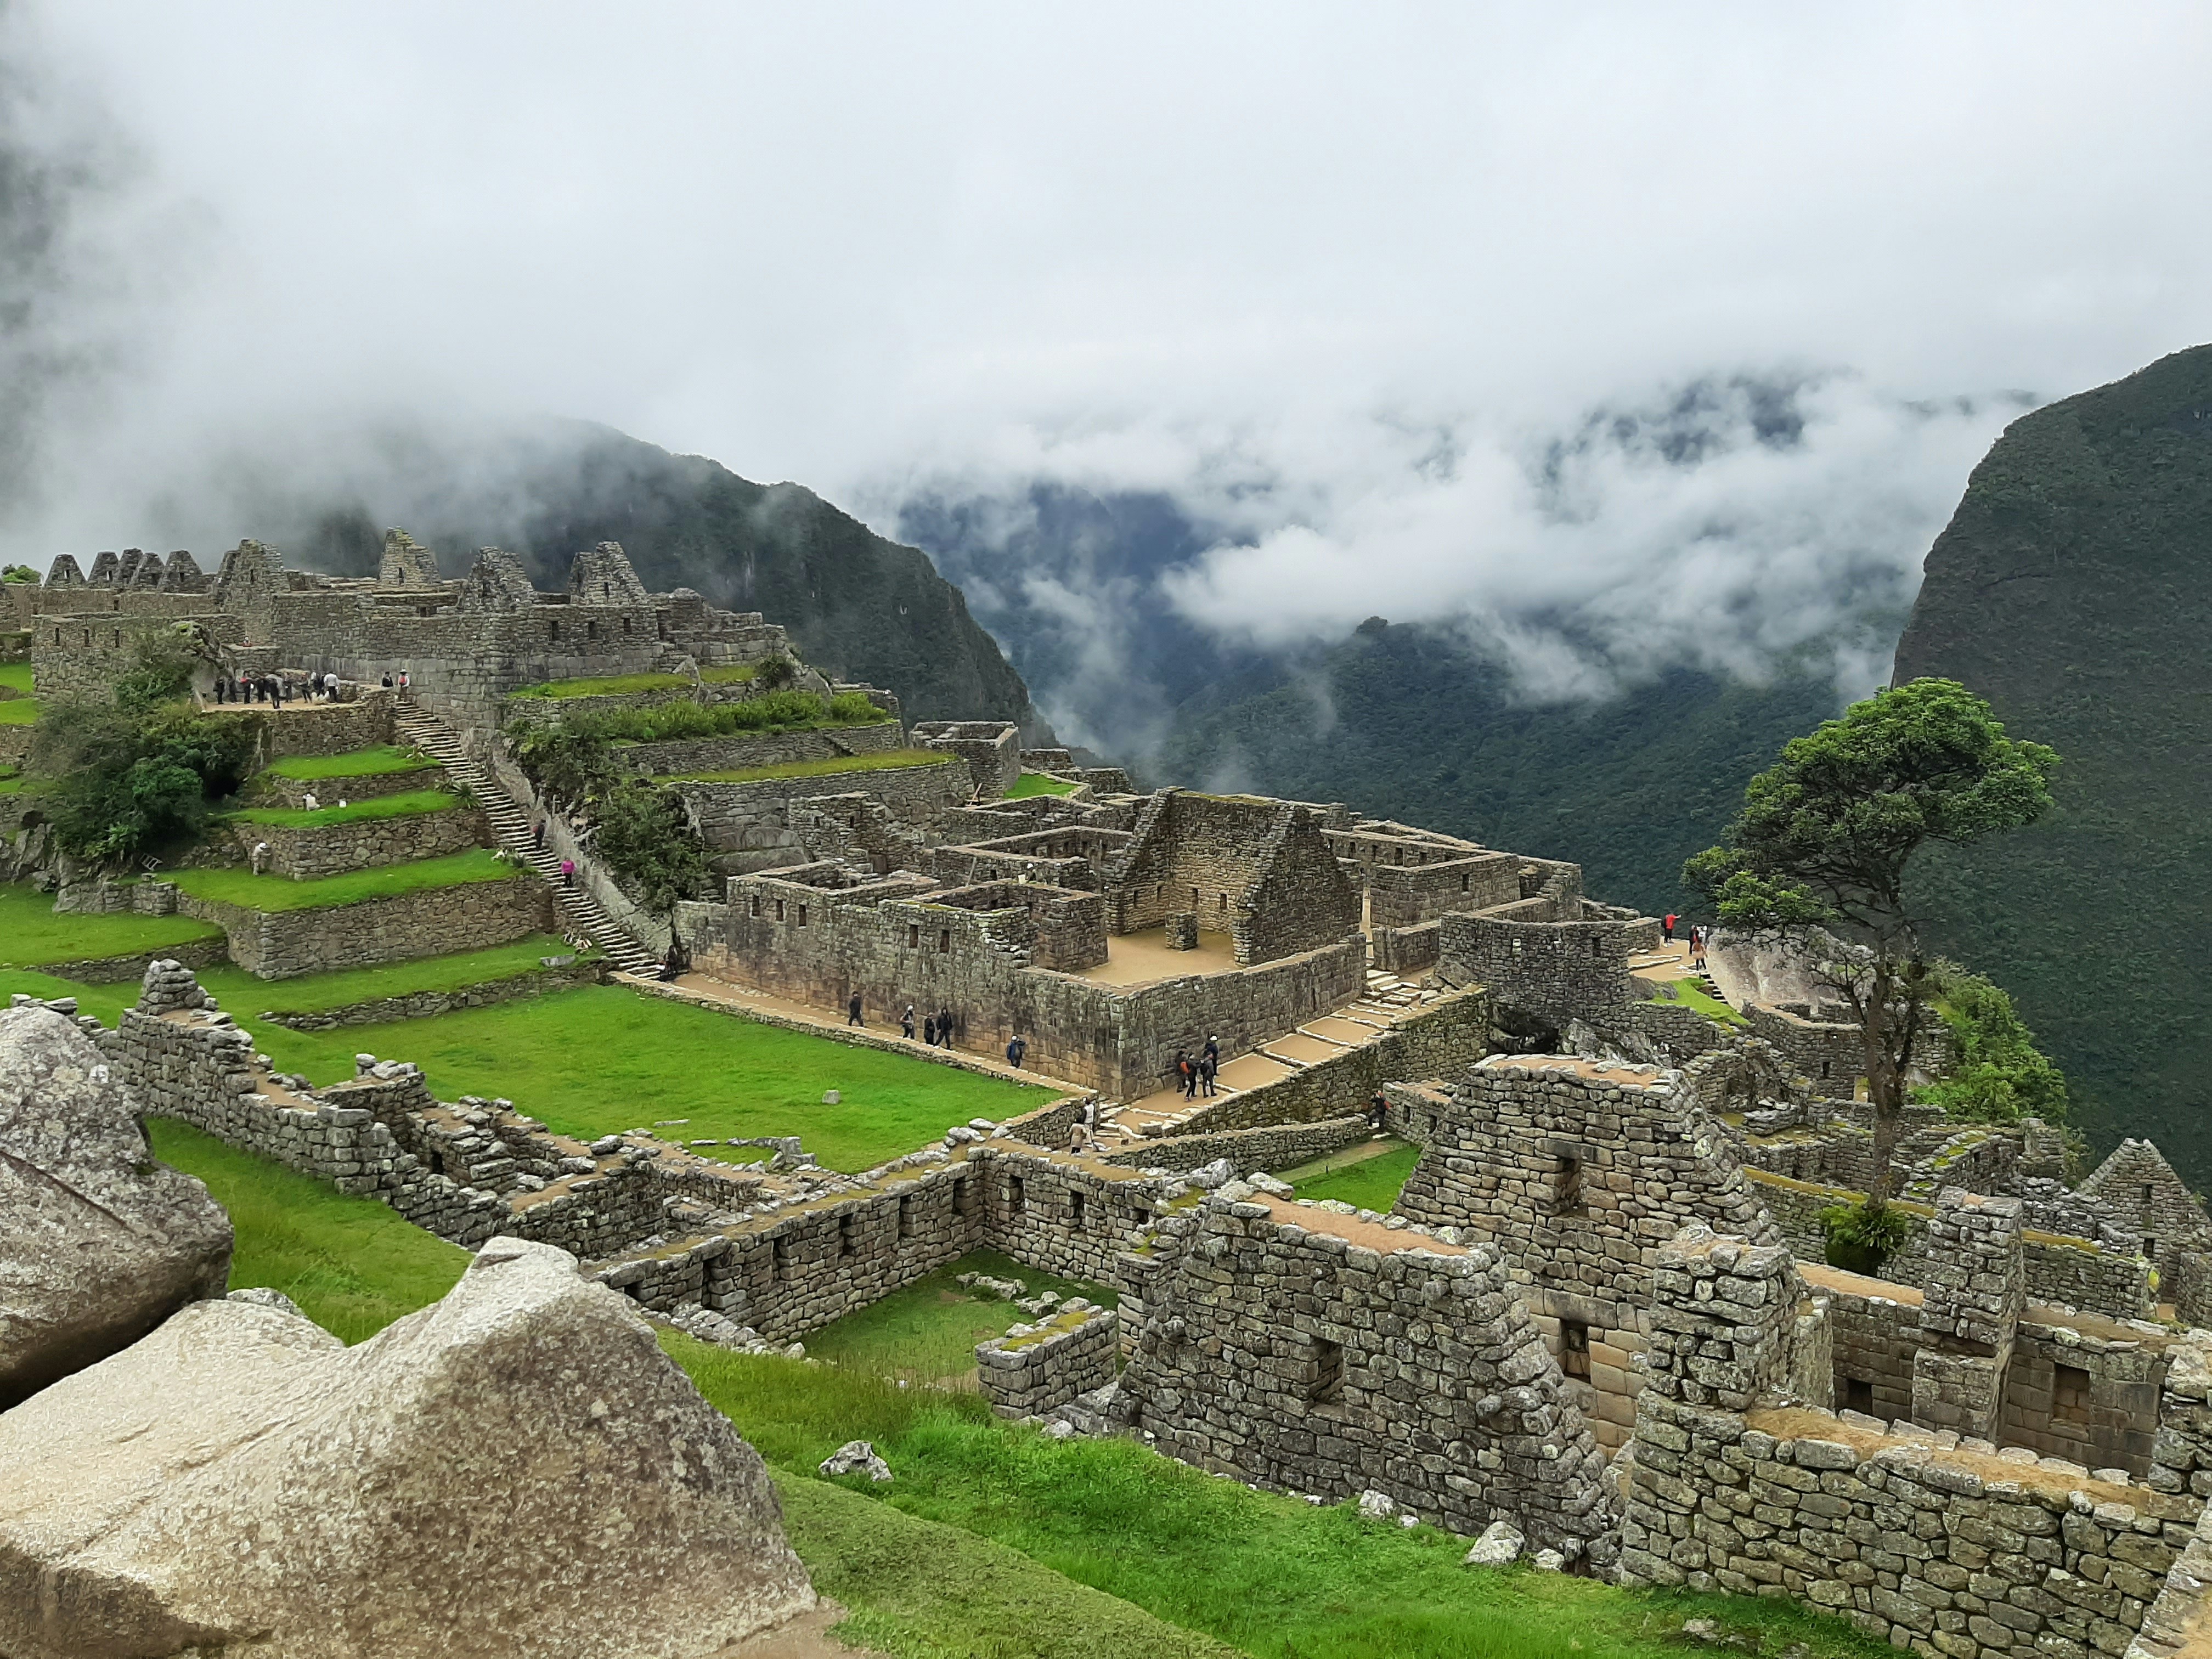 Visiting Macchu Picchu